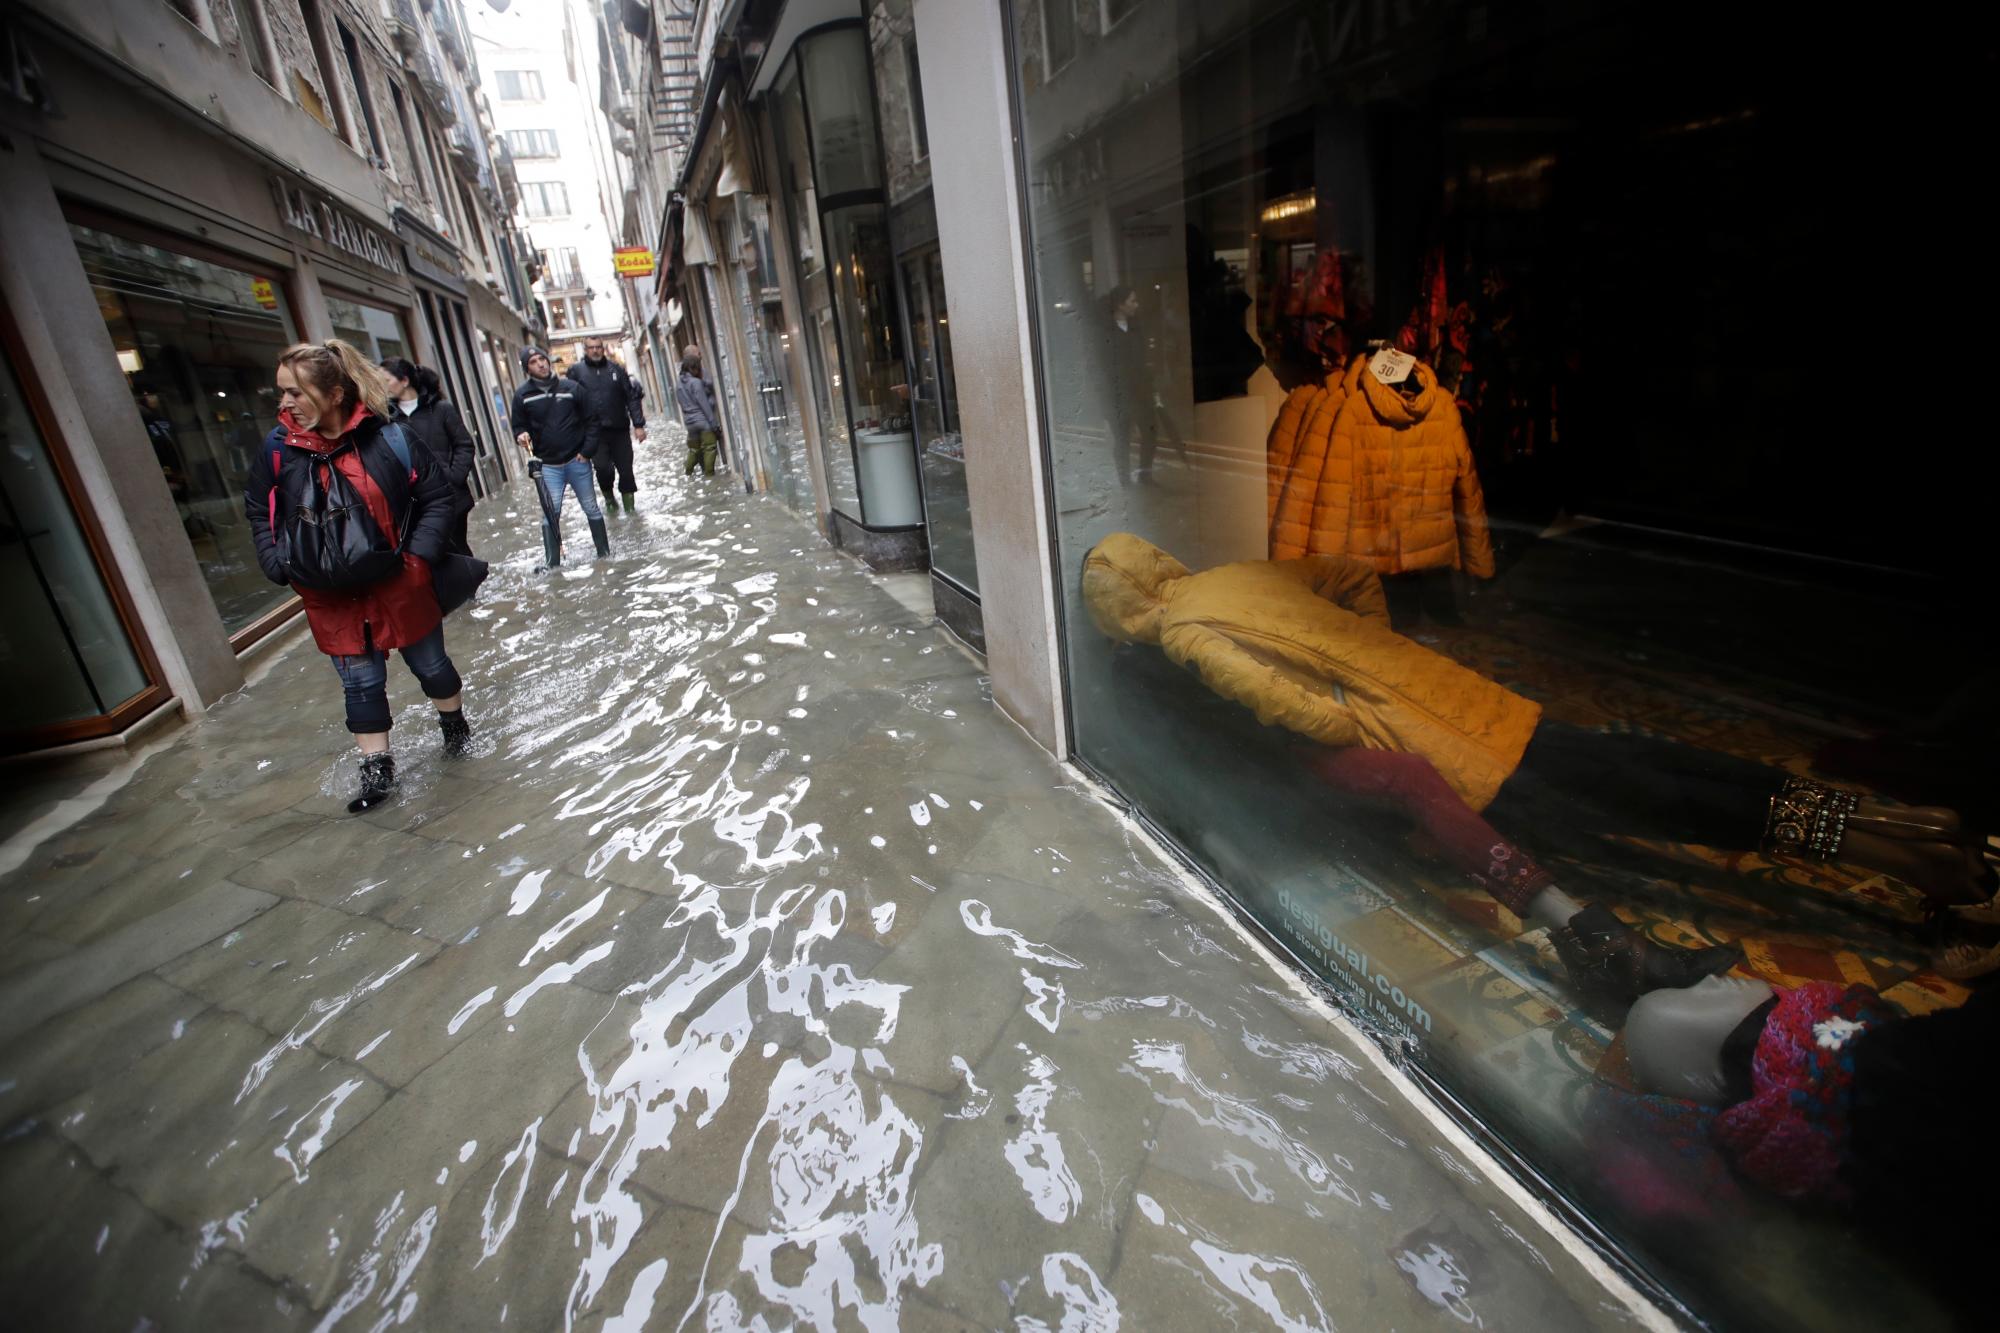 Los maniquíes yacen en el piso de una tienda mientras la gente camina por una calle inundada, en Venecia, el miércoles 13 de noviembre de 2019. La marca de la marea alta golpeó 187 centímetros (74 pulgadas) el martes 12 de noviembre de 2019, lo que significa más más del 85% de la ciudad se inundó. El nivel más alto jamás registrado fue de 194 centímetros (76 pulgadas) durante las inundaciones infames en 1966. 